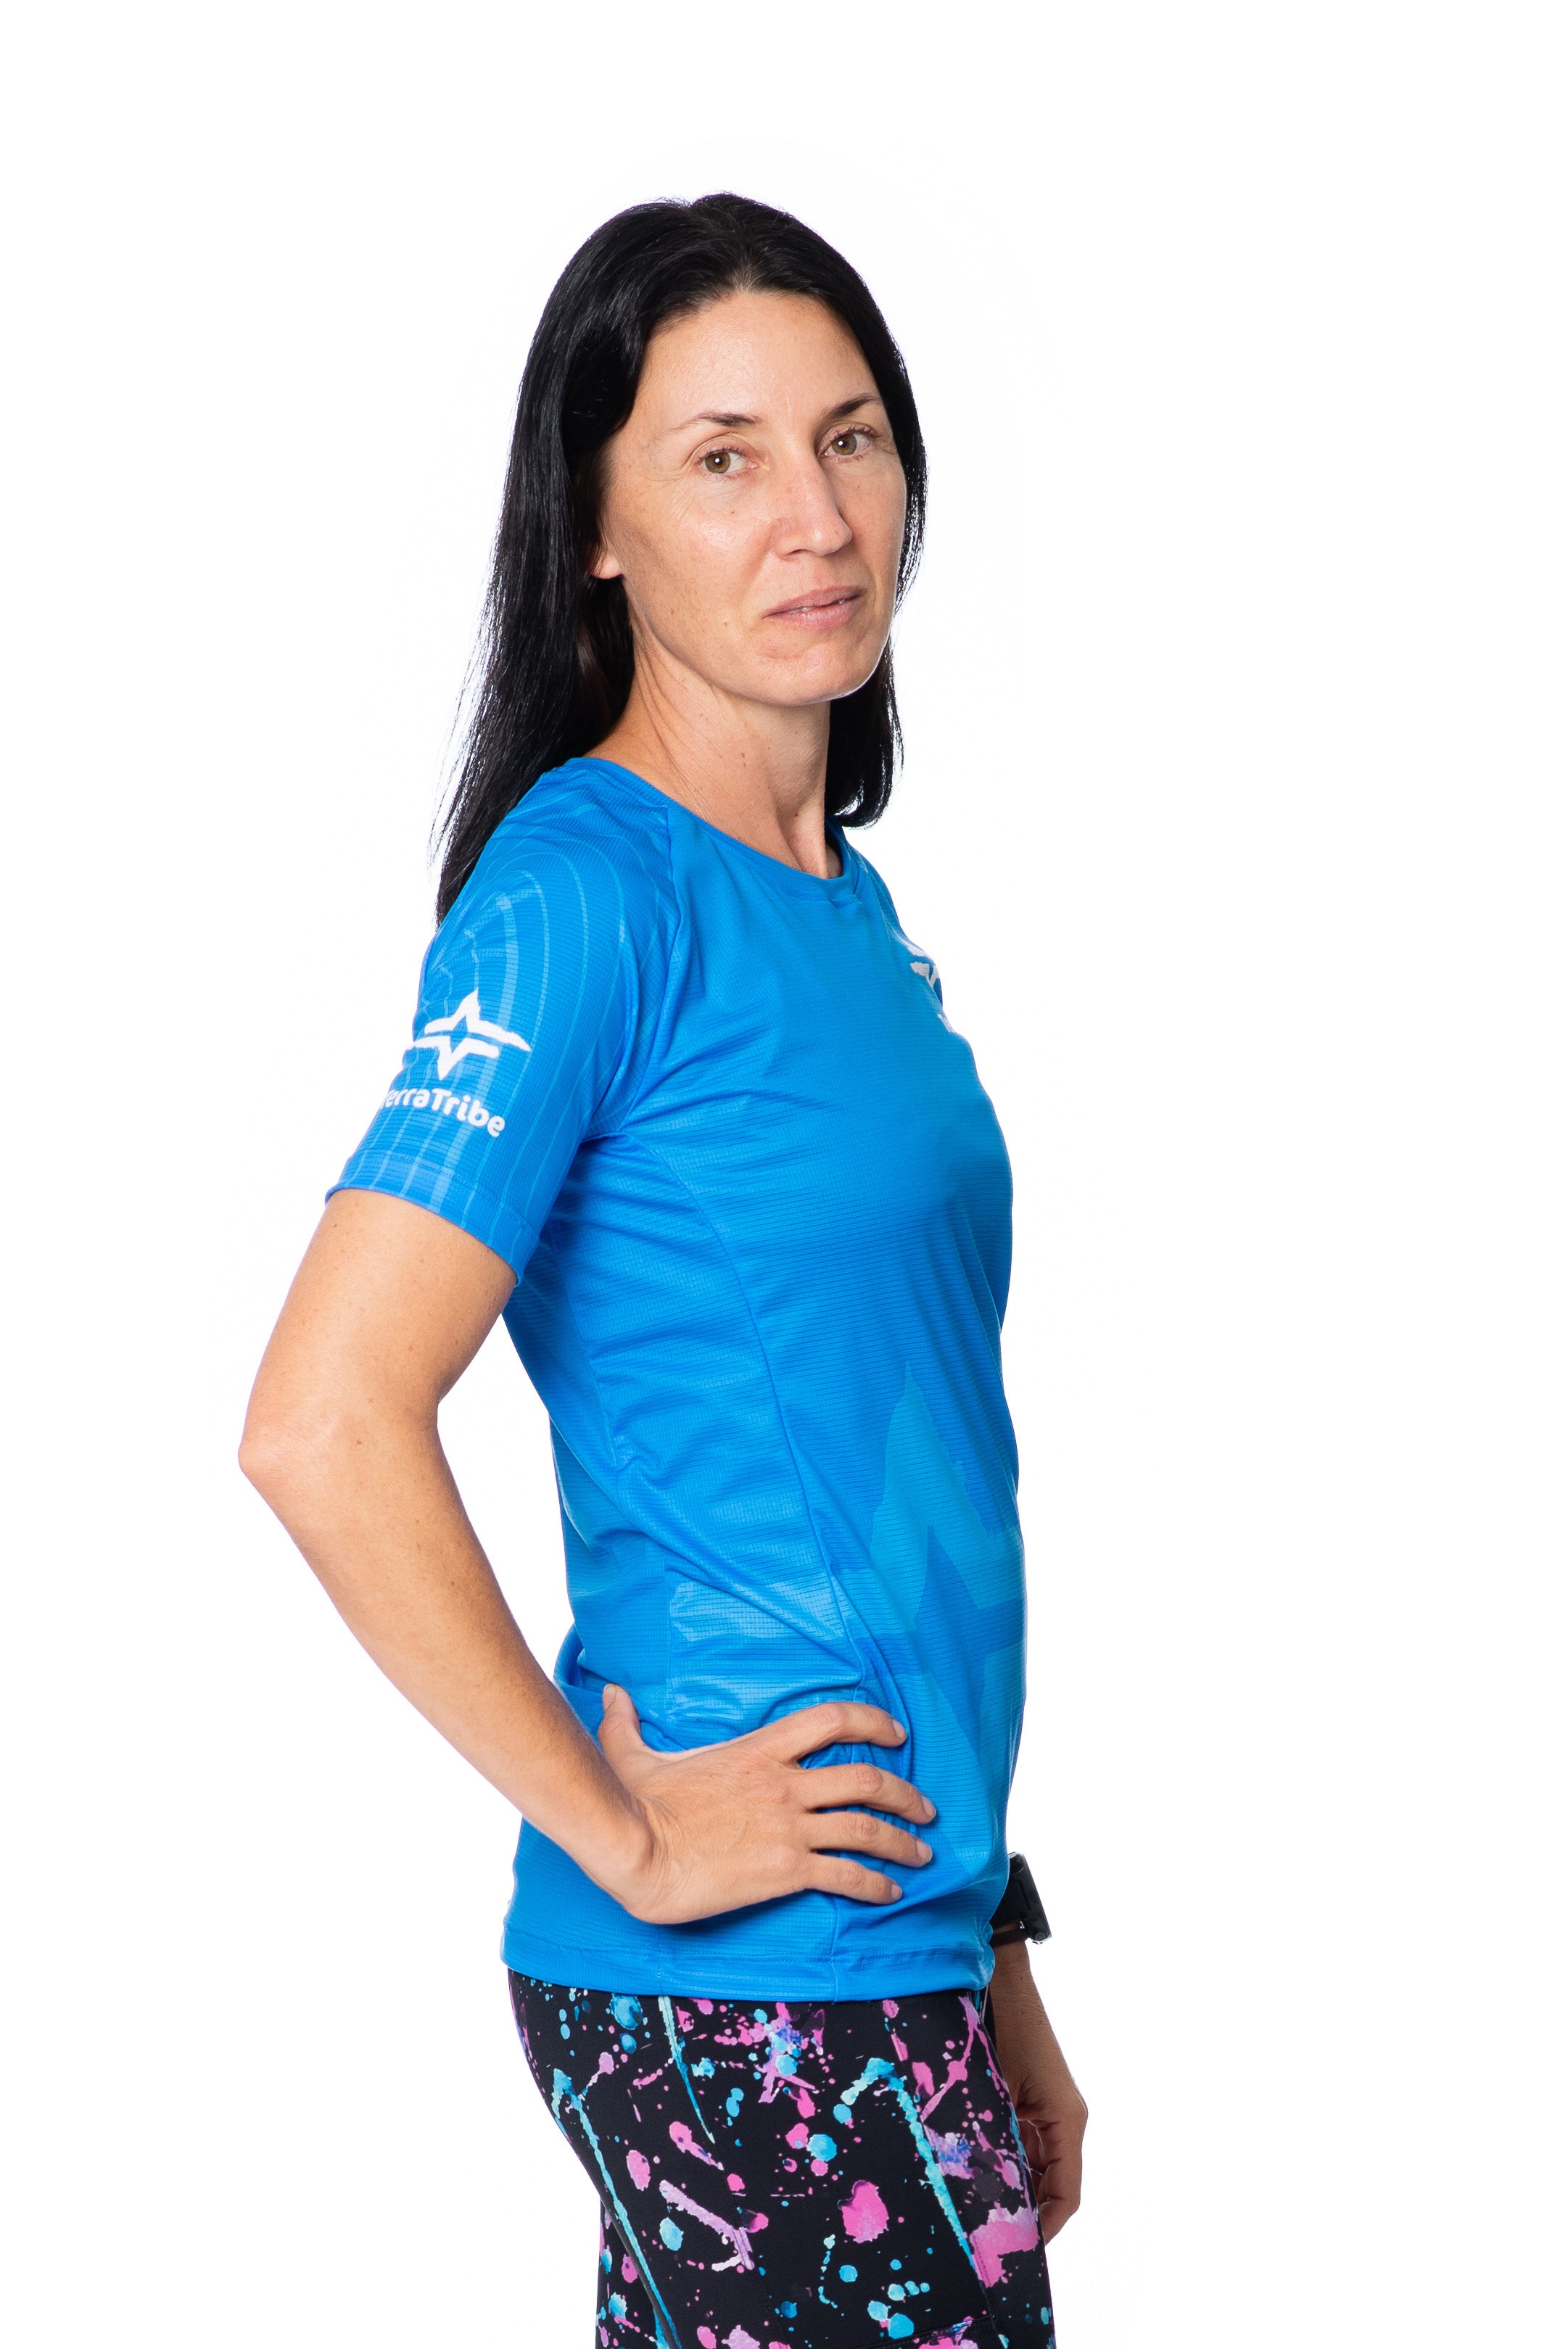 TerraTribe Womens Lightweight Running T-Shirt Blue